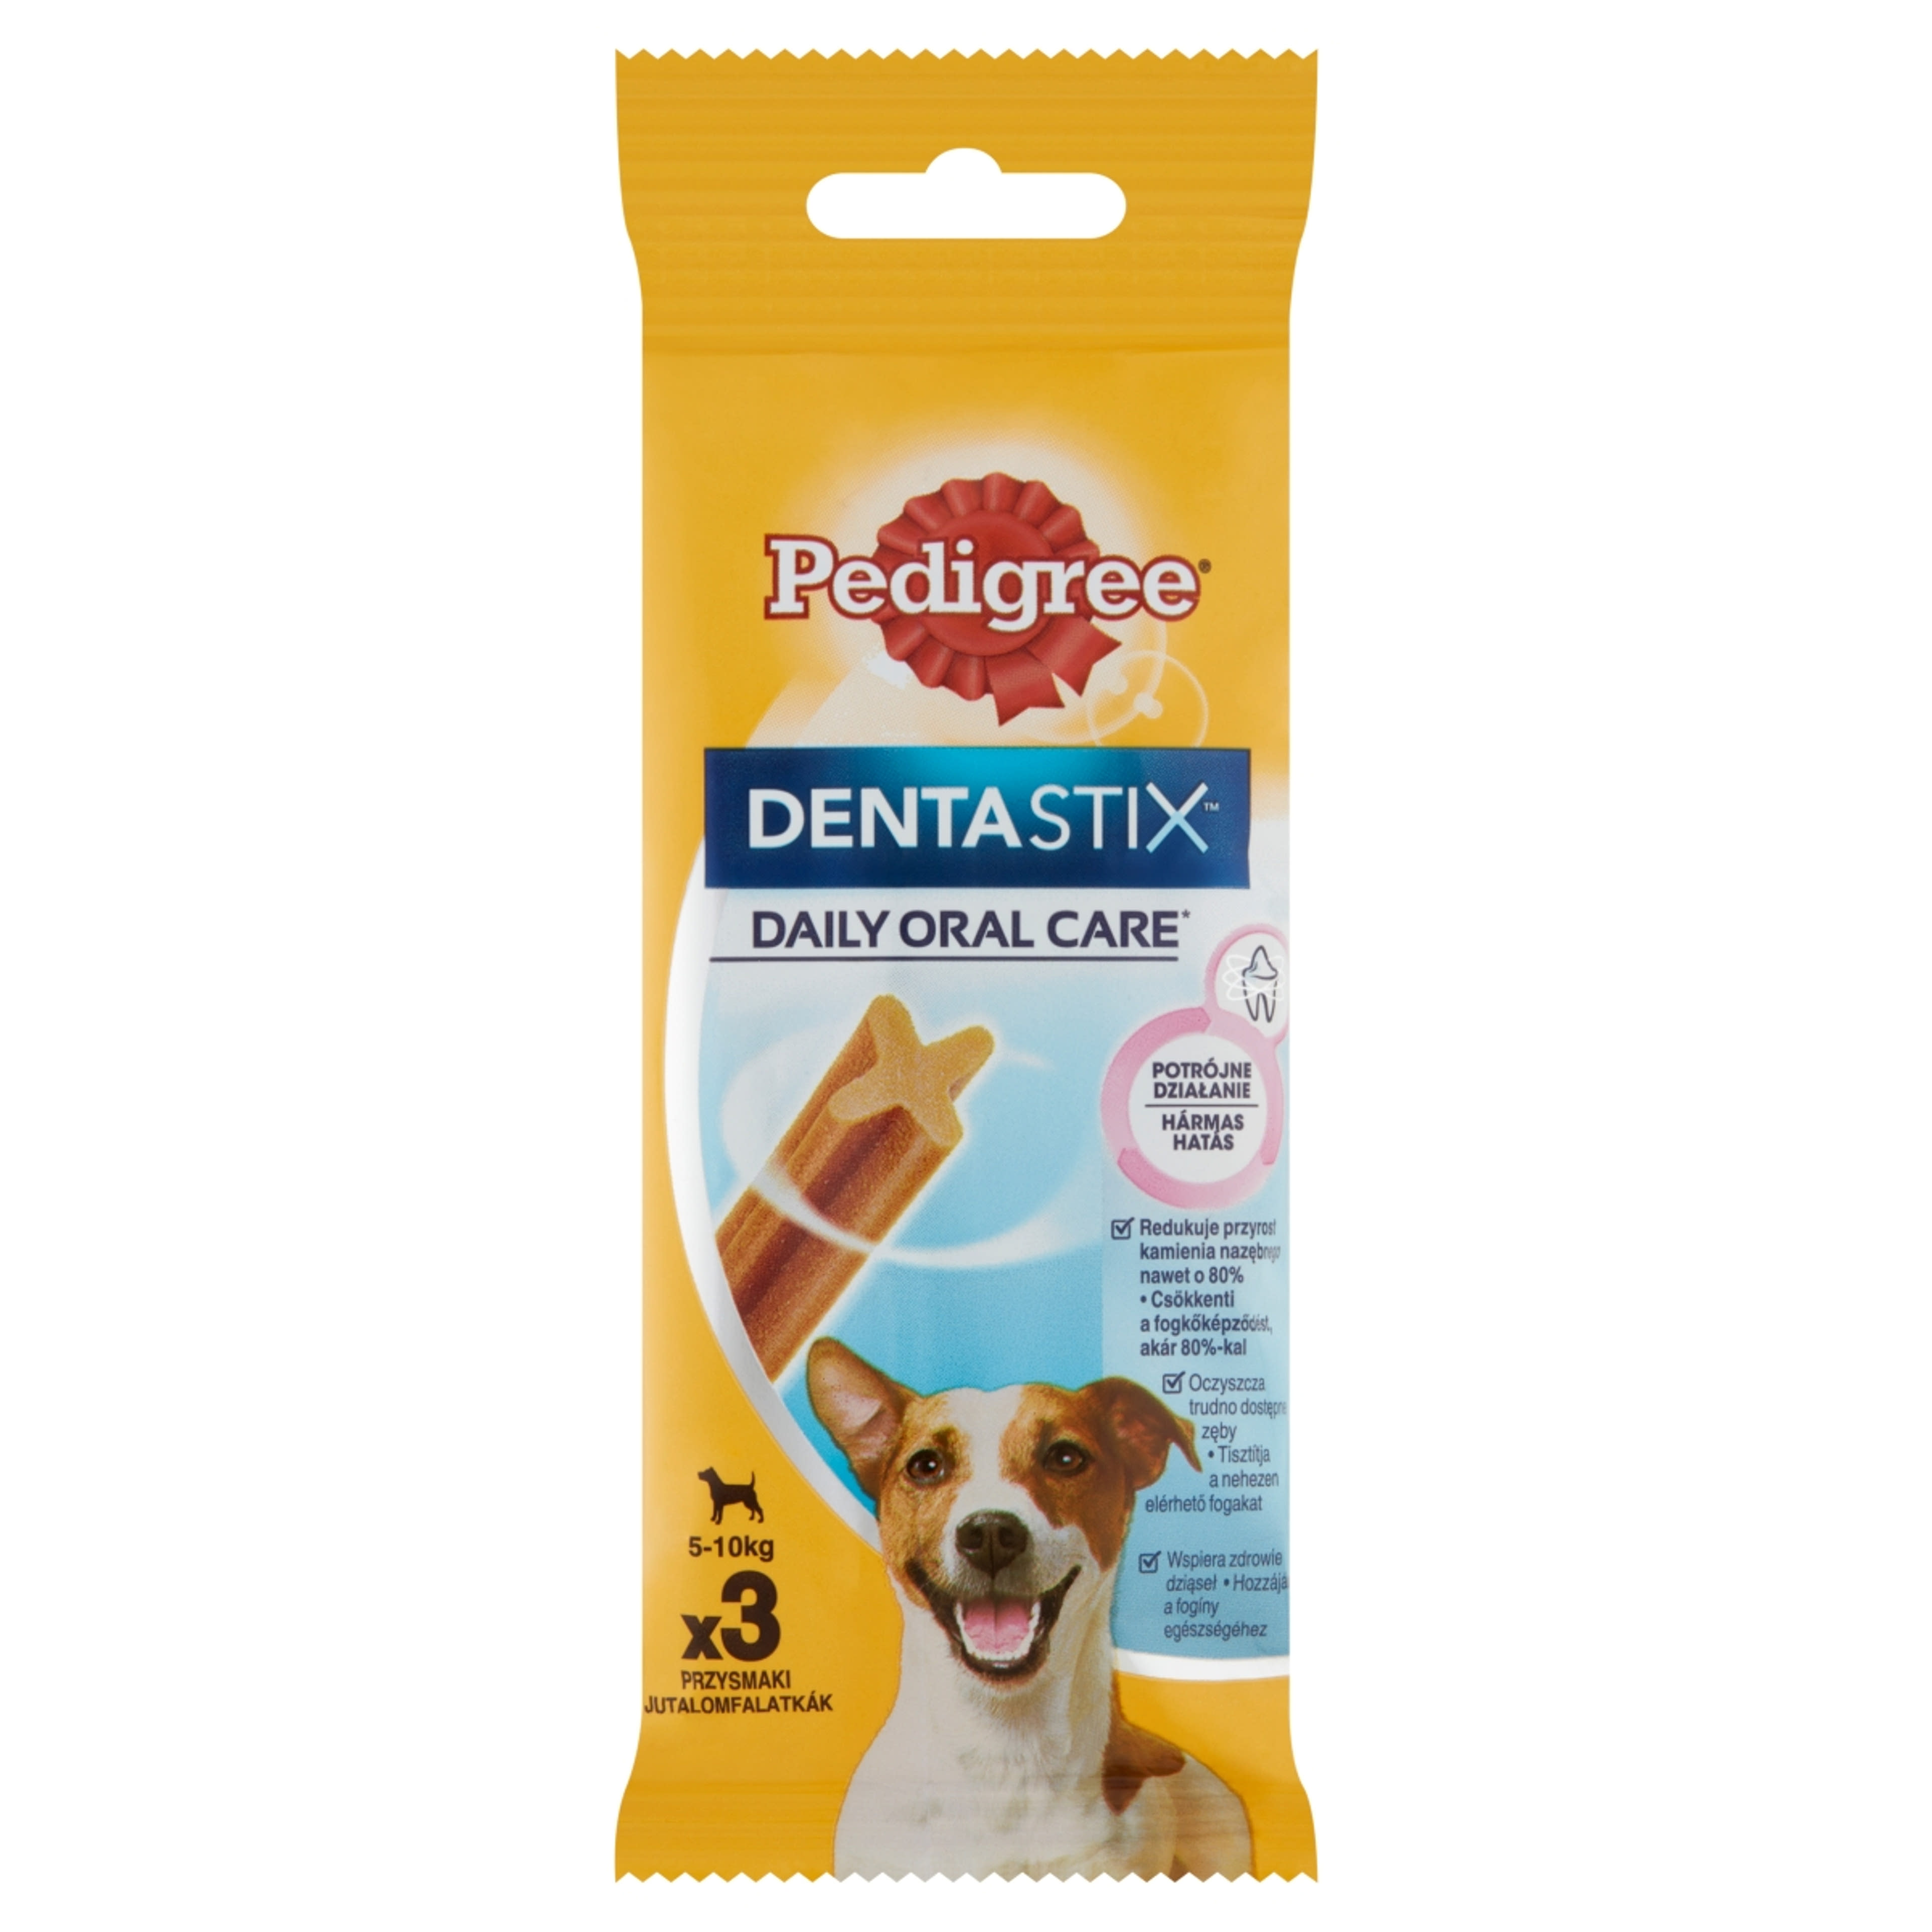 Pedigree DentaStix kistestű és 4 hónapnál idősebb kiegészítő szárazeledel kutyáknak, 3 db - 45 g